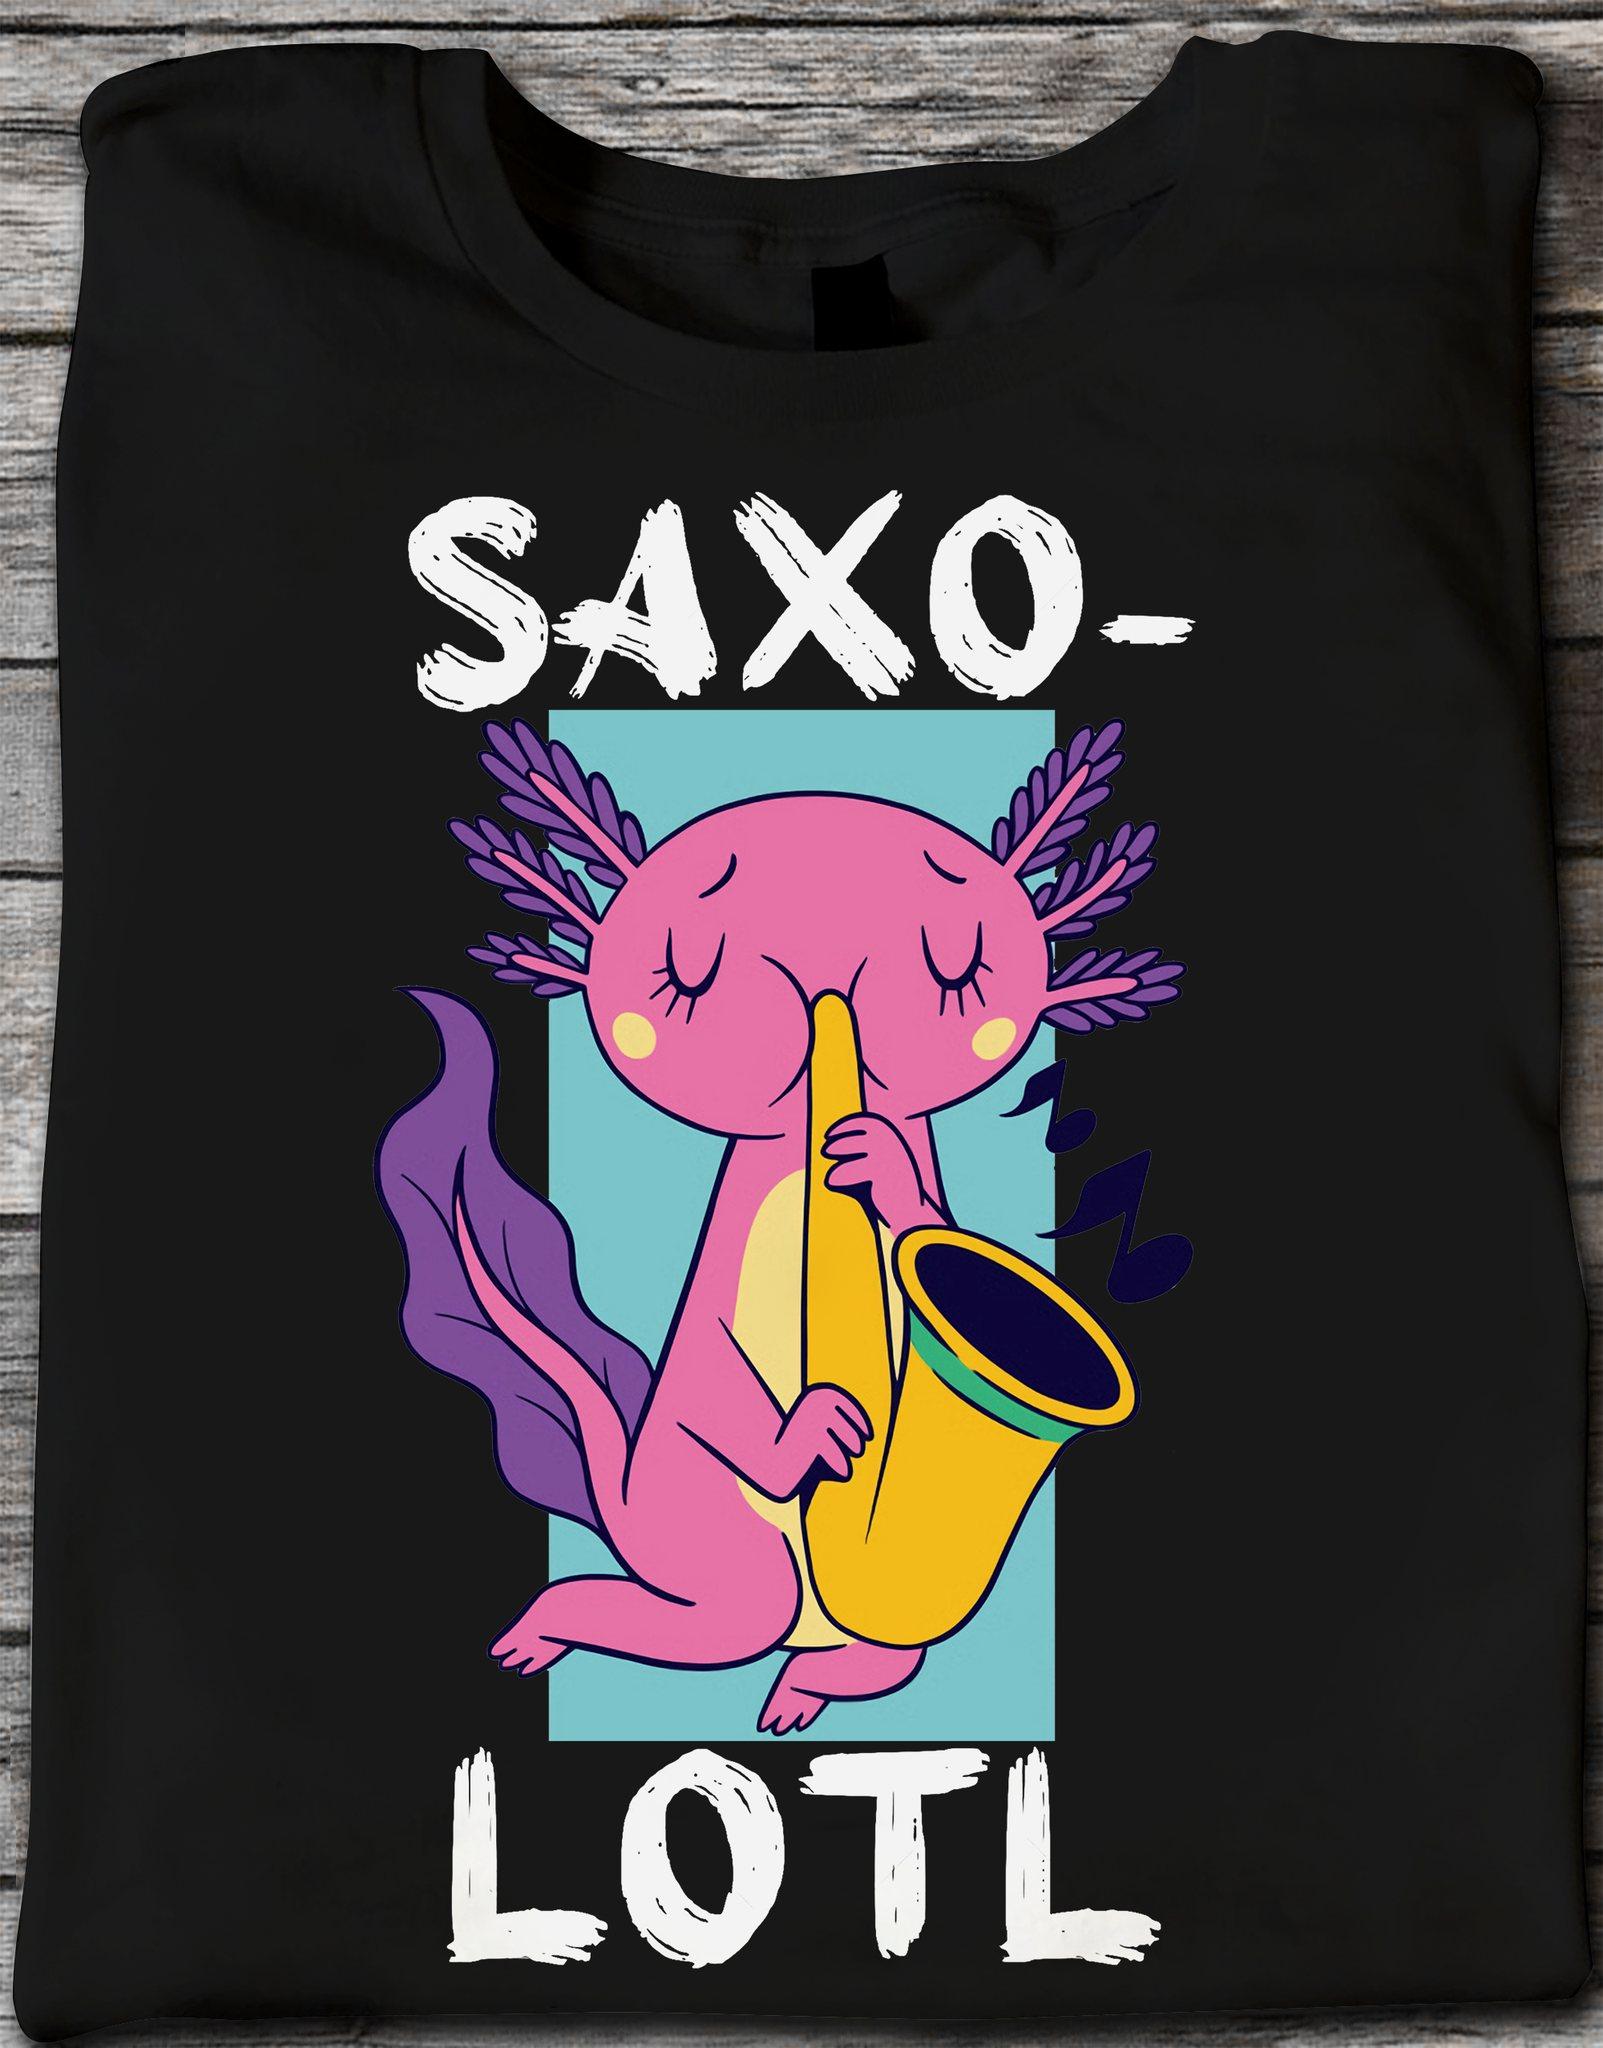 Saxolotl playing saxophone - Axolotl dragon, Mexico Axolotl